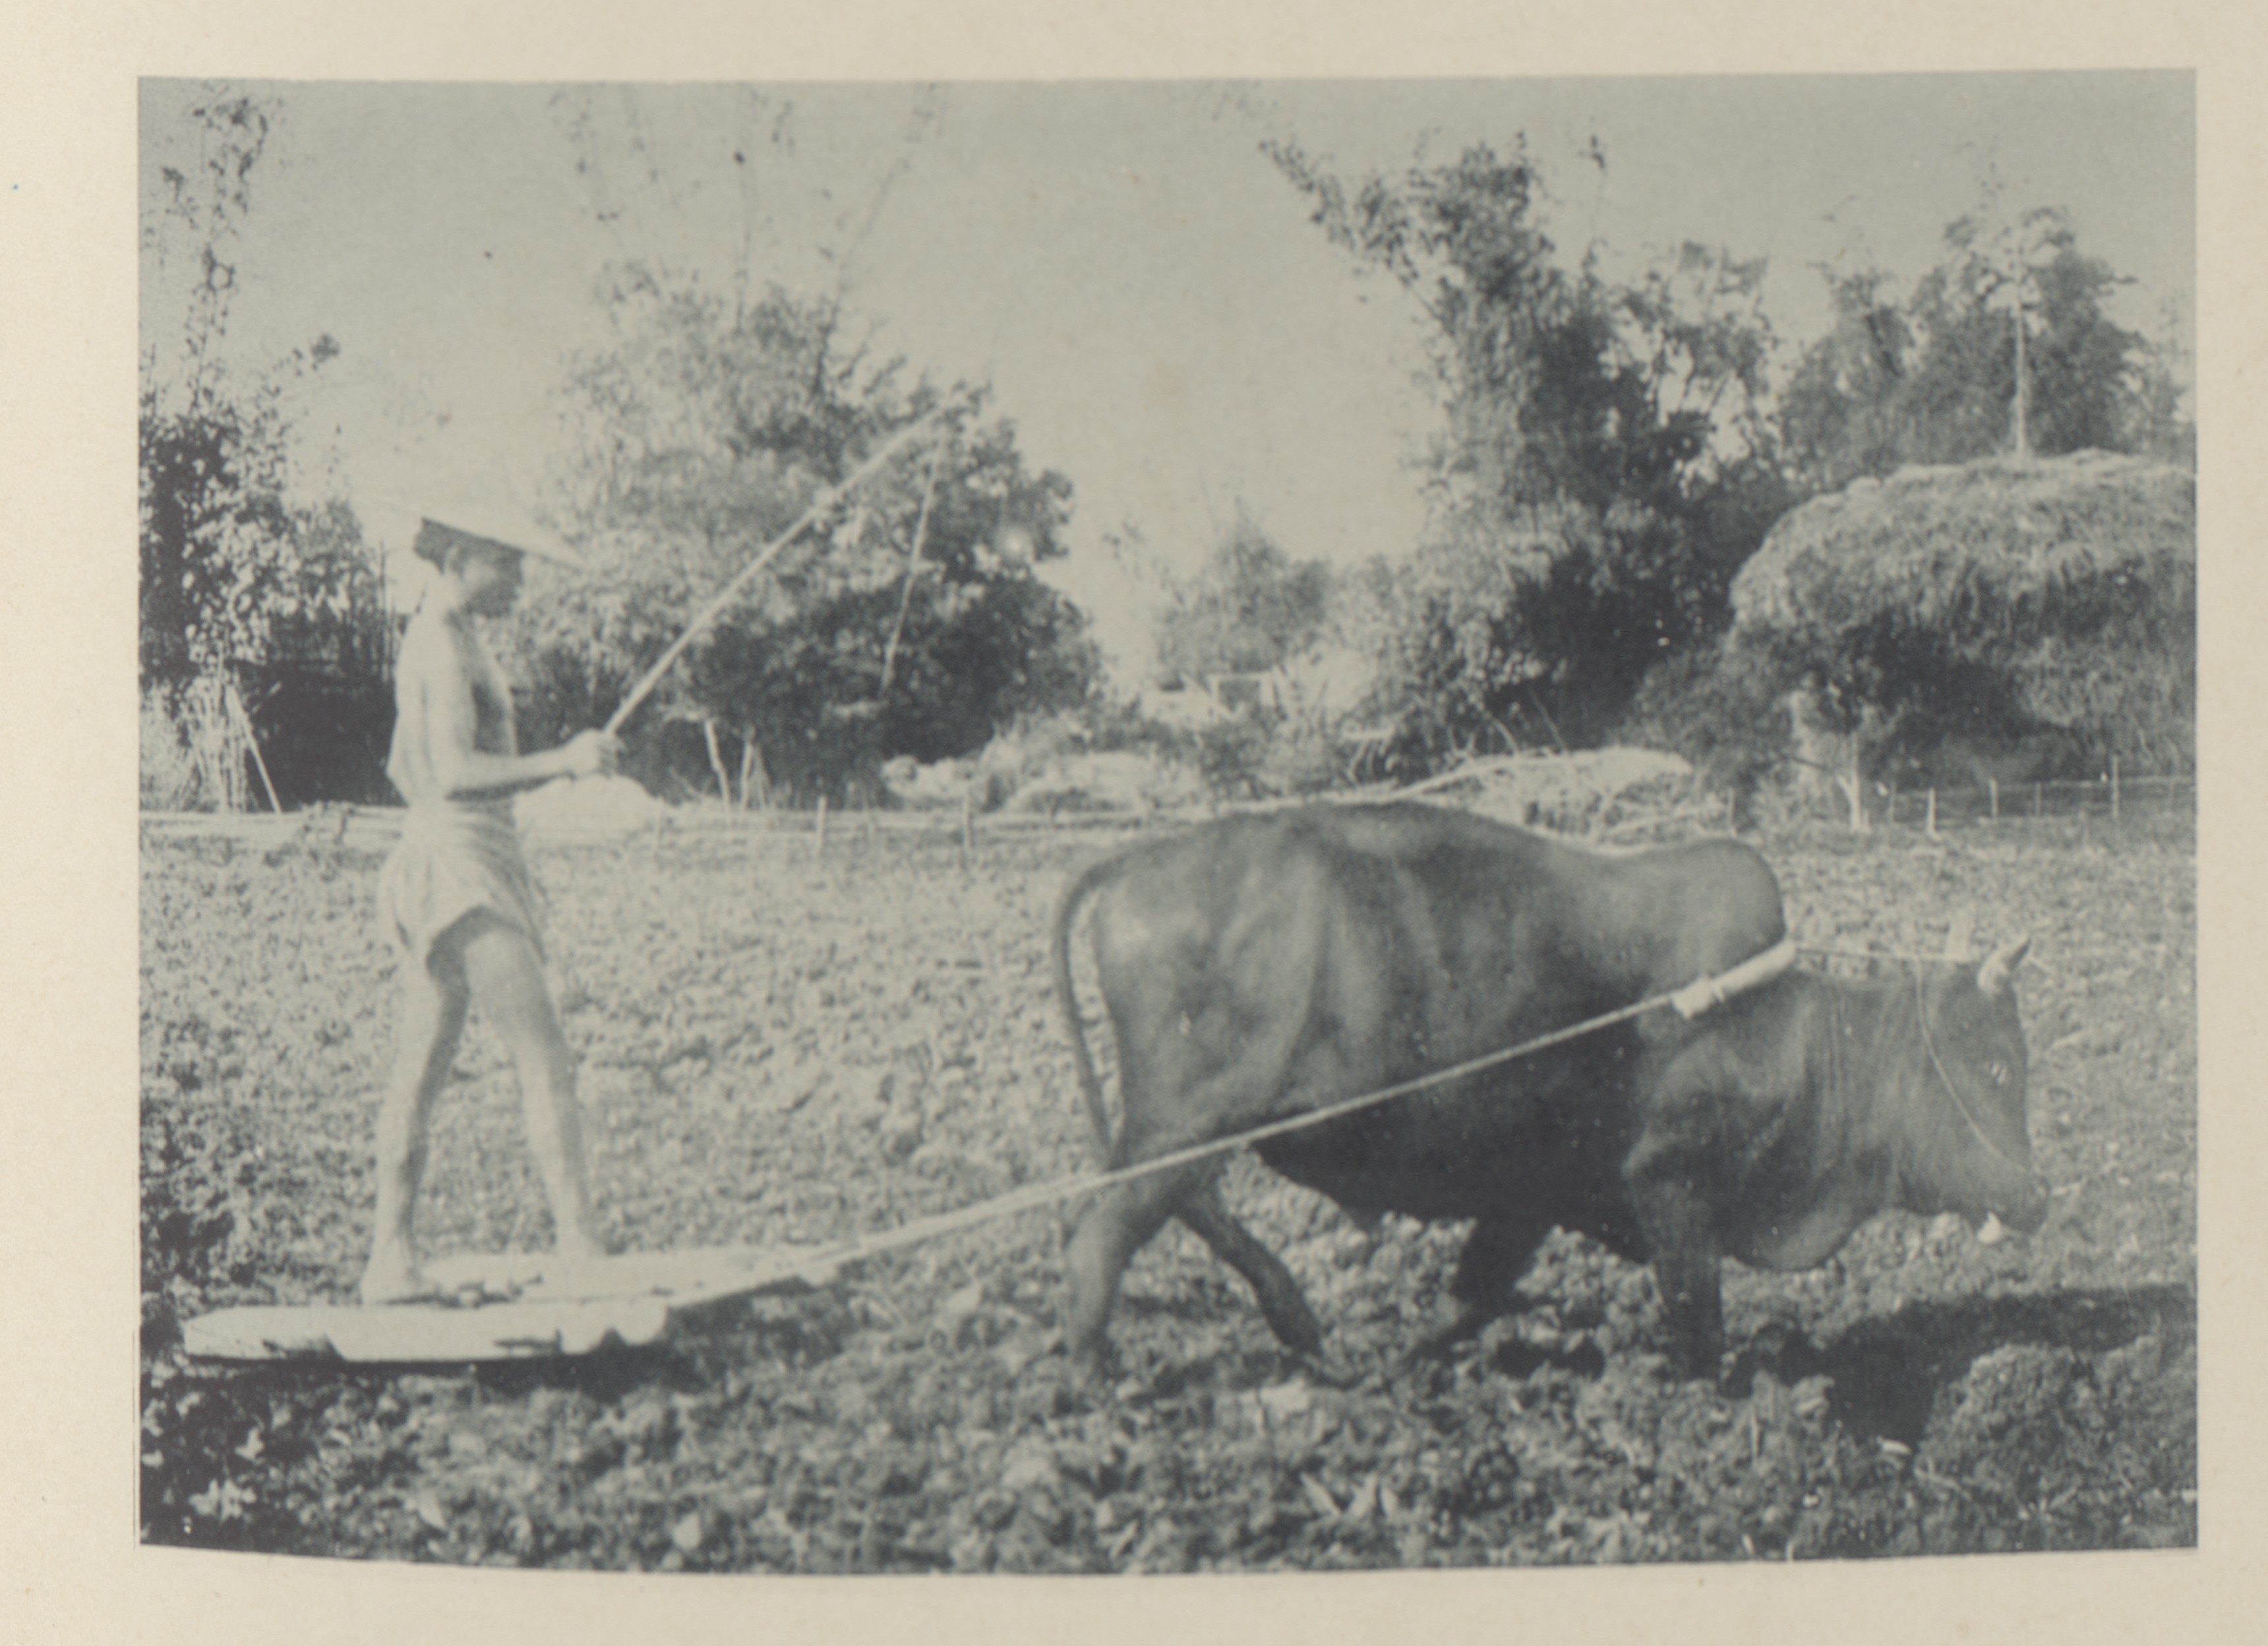 照片中農民指揮著耕牛進行整地，忙著在插秧前做好準備。農夫腳下踩著「割耙」，是用來整平農田的碎土工具，可將牛犁翻出的土塊割碎。（圖/攝影文化中心提供）